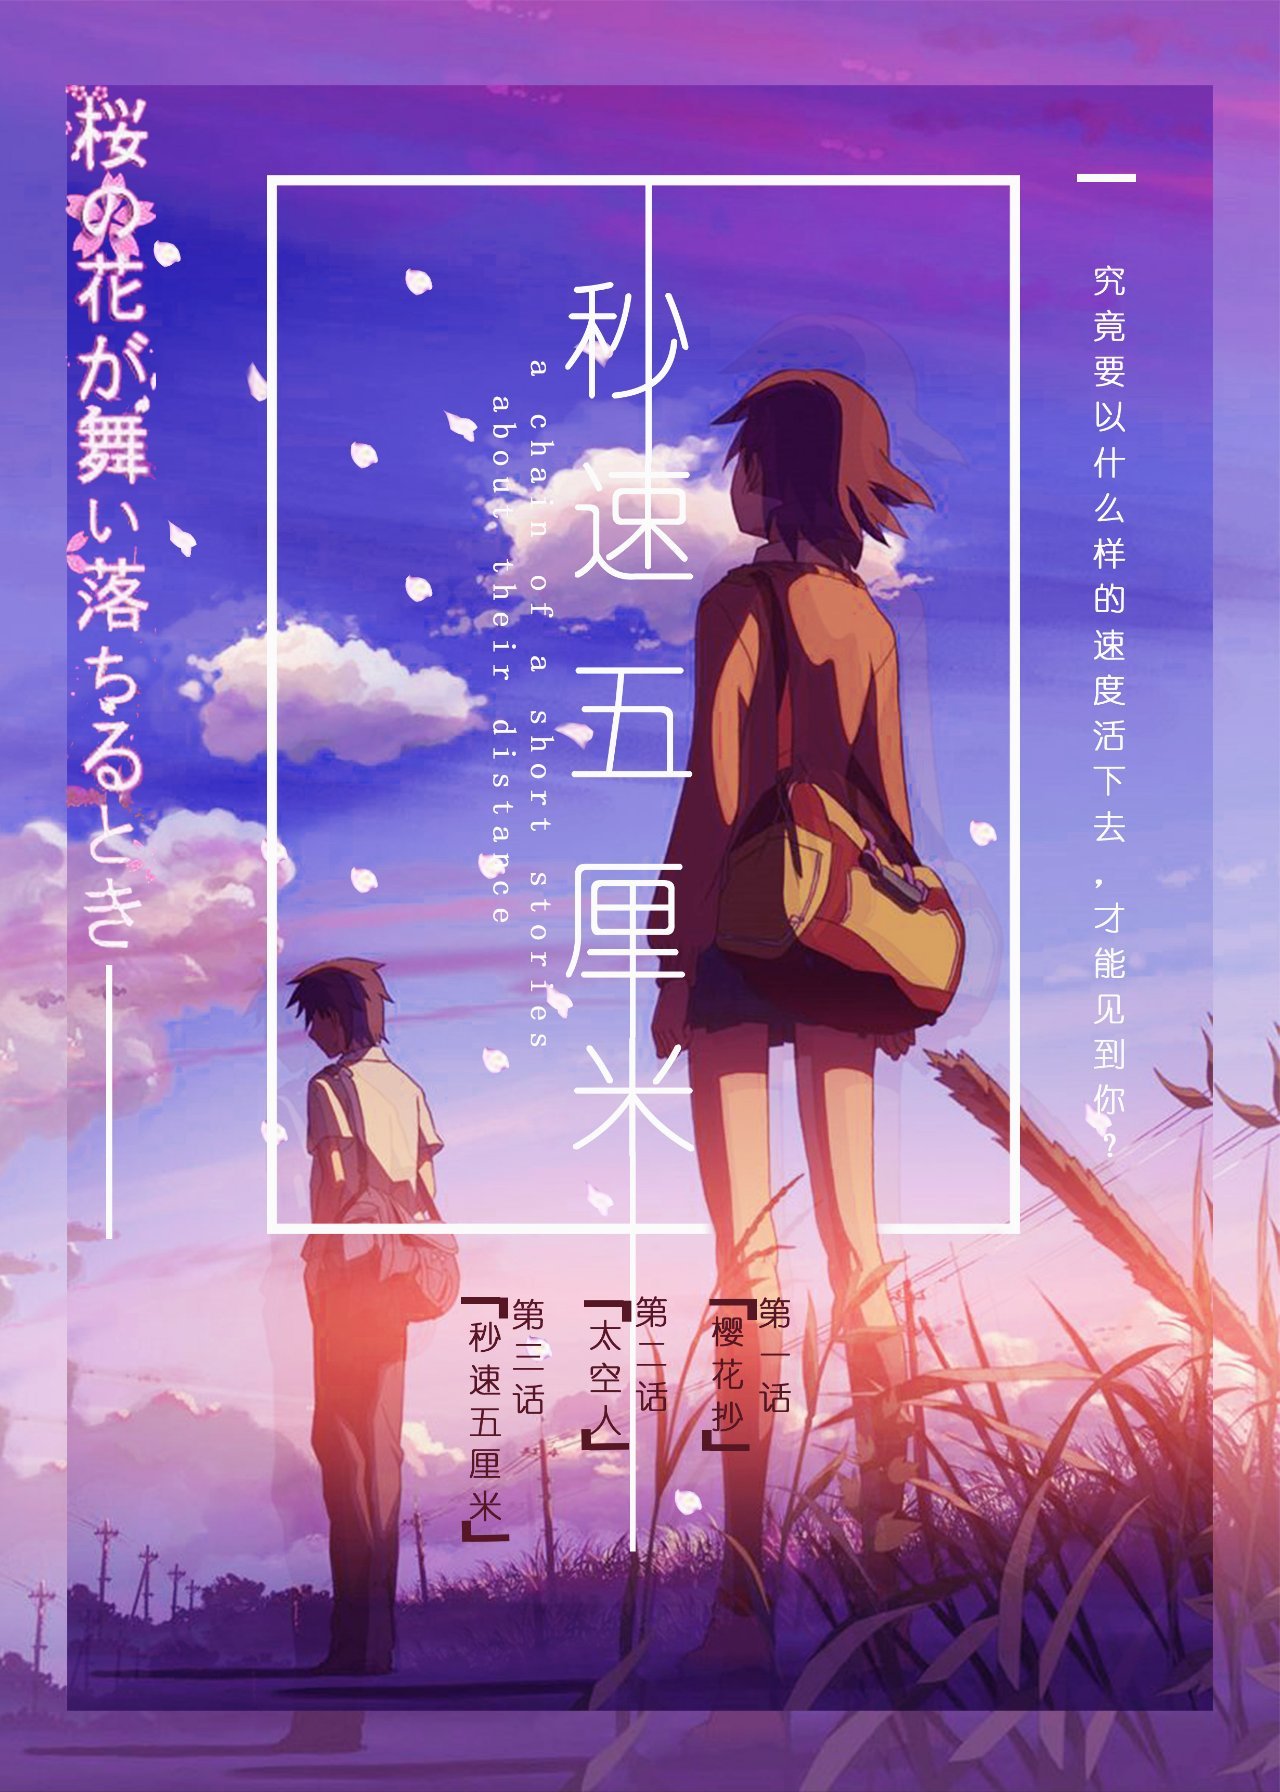 《秒速五釐米》櫻前線 將在3月29日特殊上映